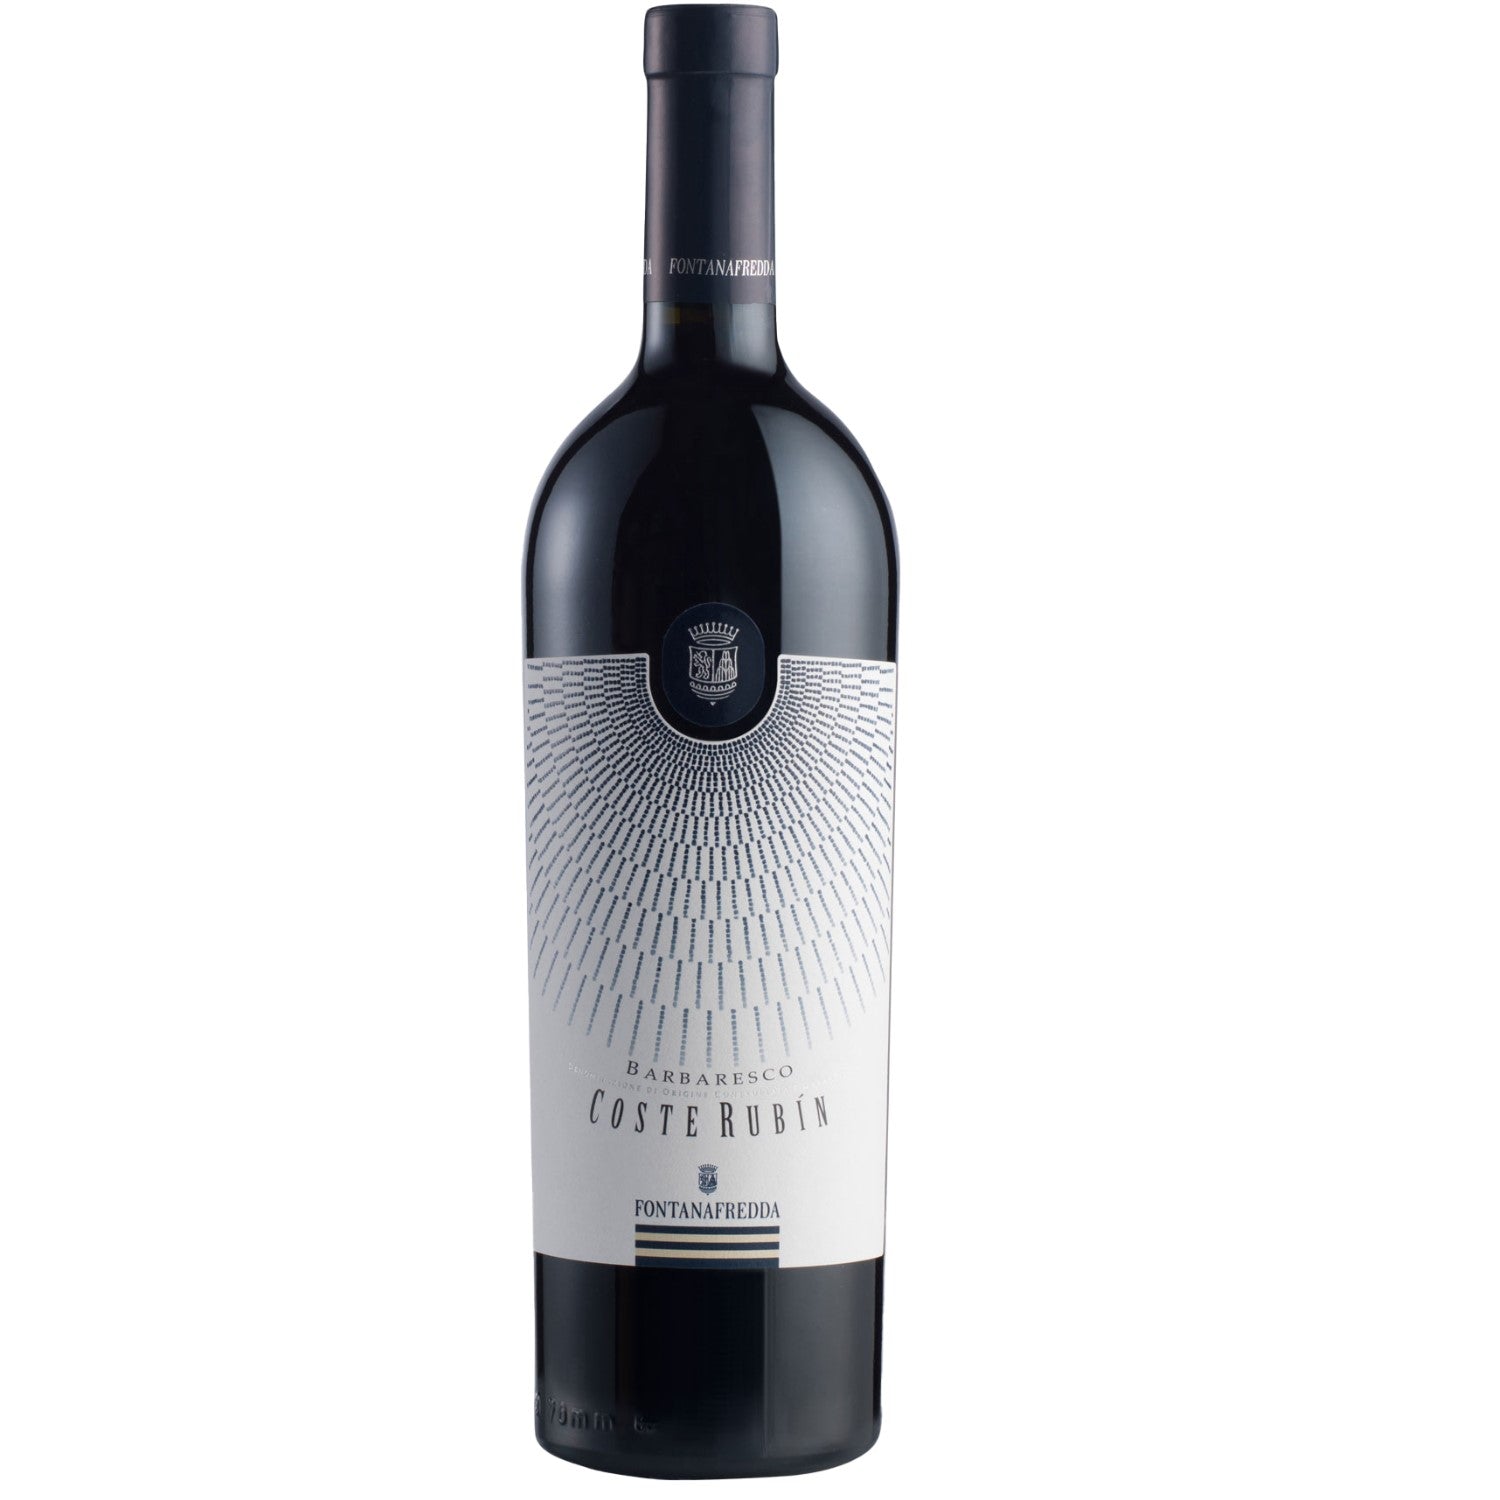 Fontanafredda Coste Rubin Barbaresco DOCG Rotwein Wein trocken Italien (3 x 0.75l) - Versanel -